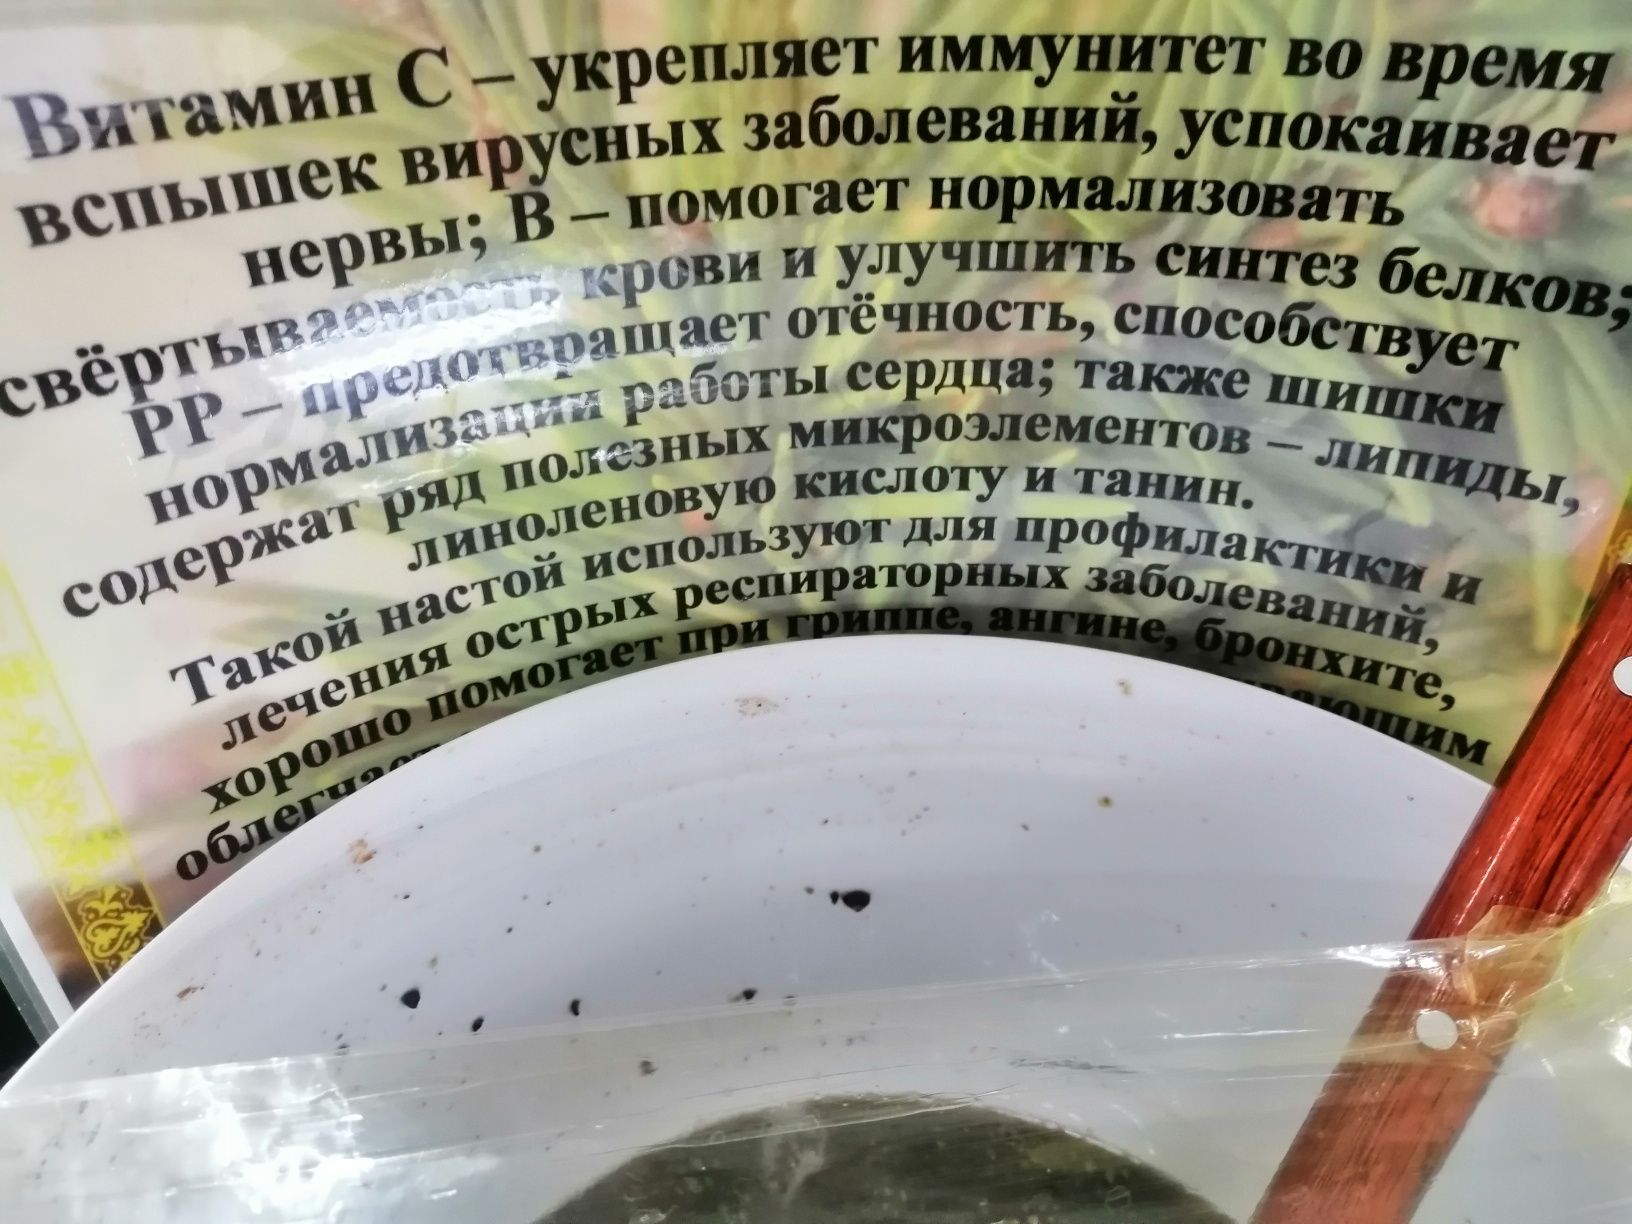 Элитный мёд с сосновыми шишками Башкортостана - объедение и польза!